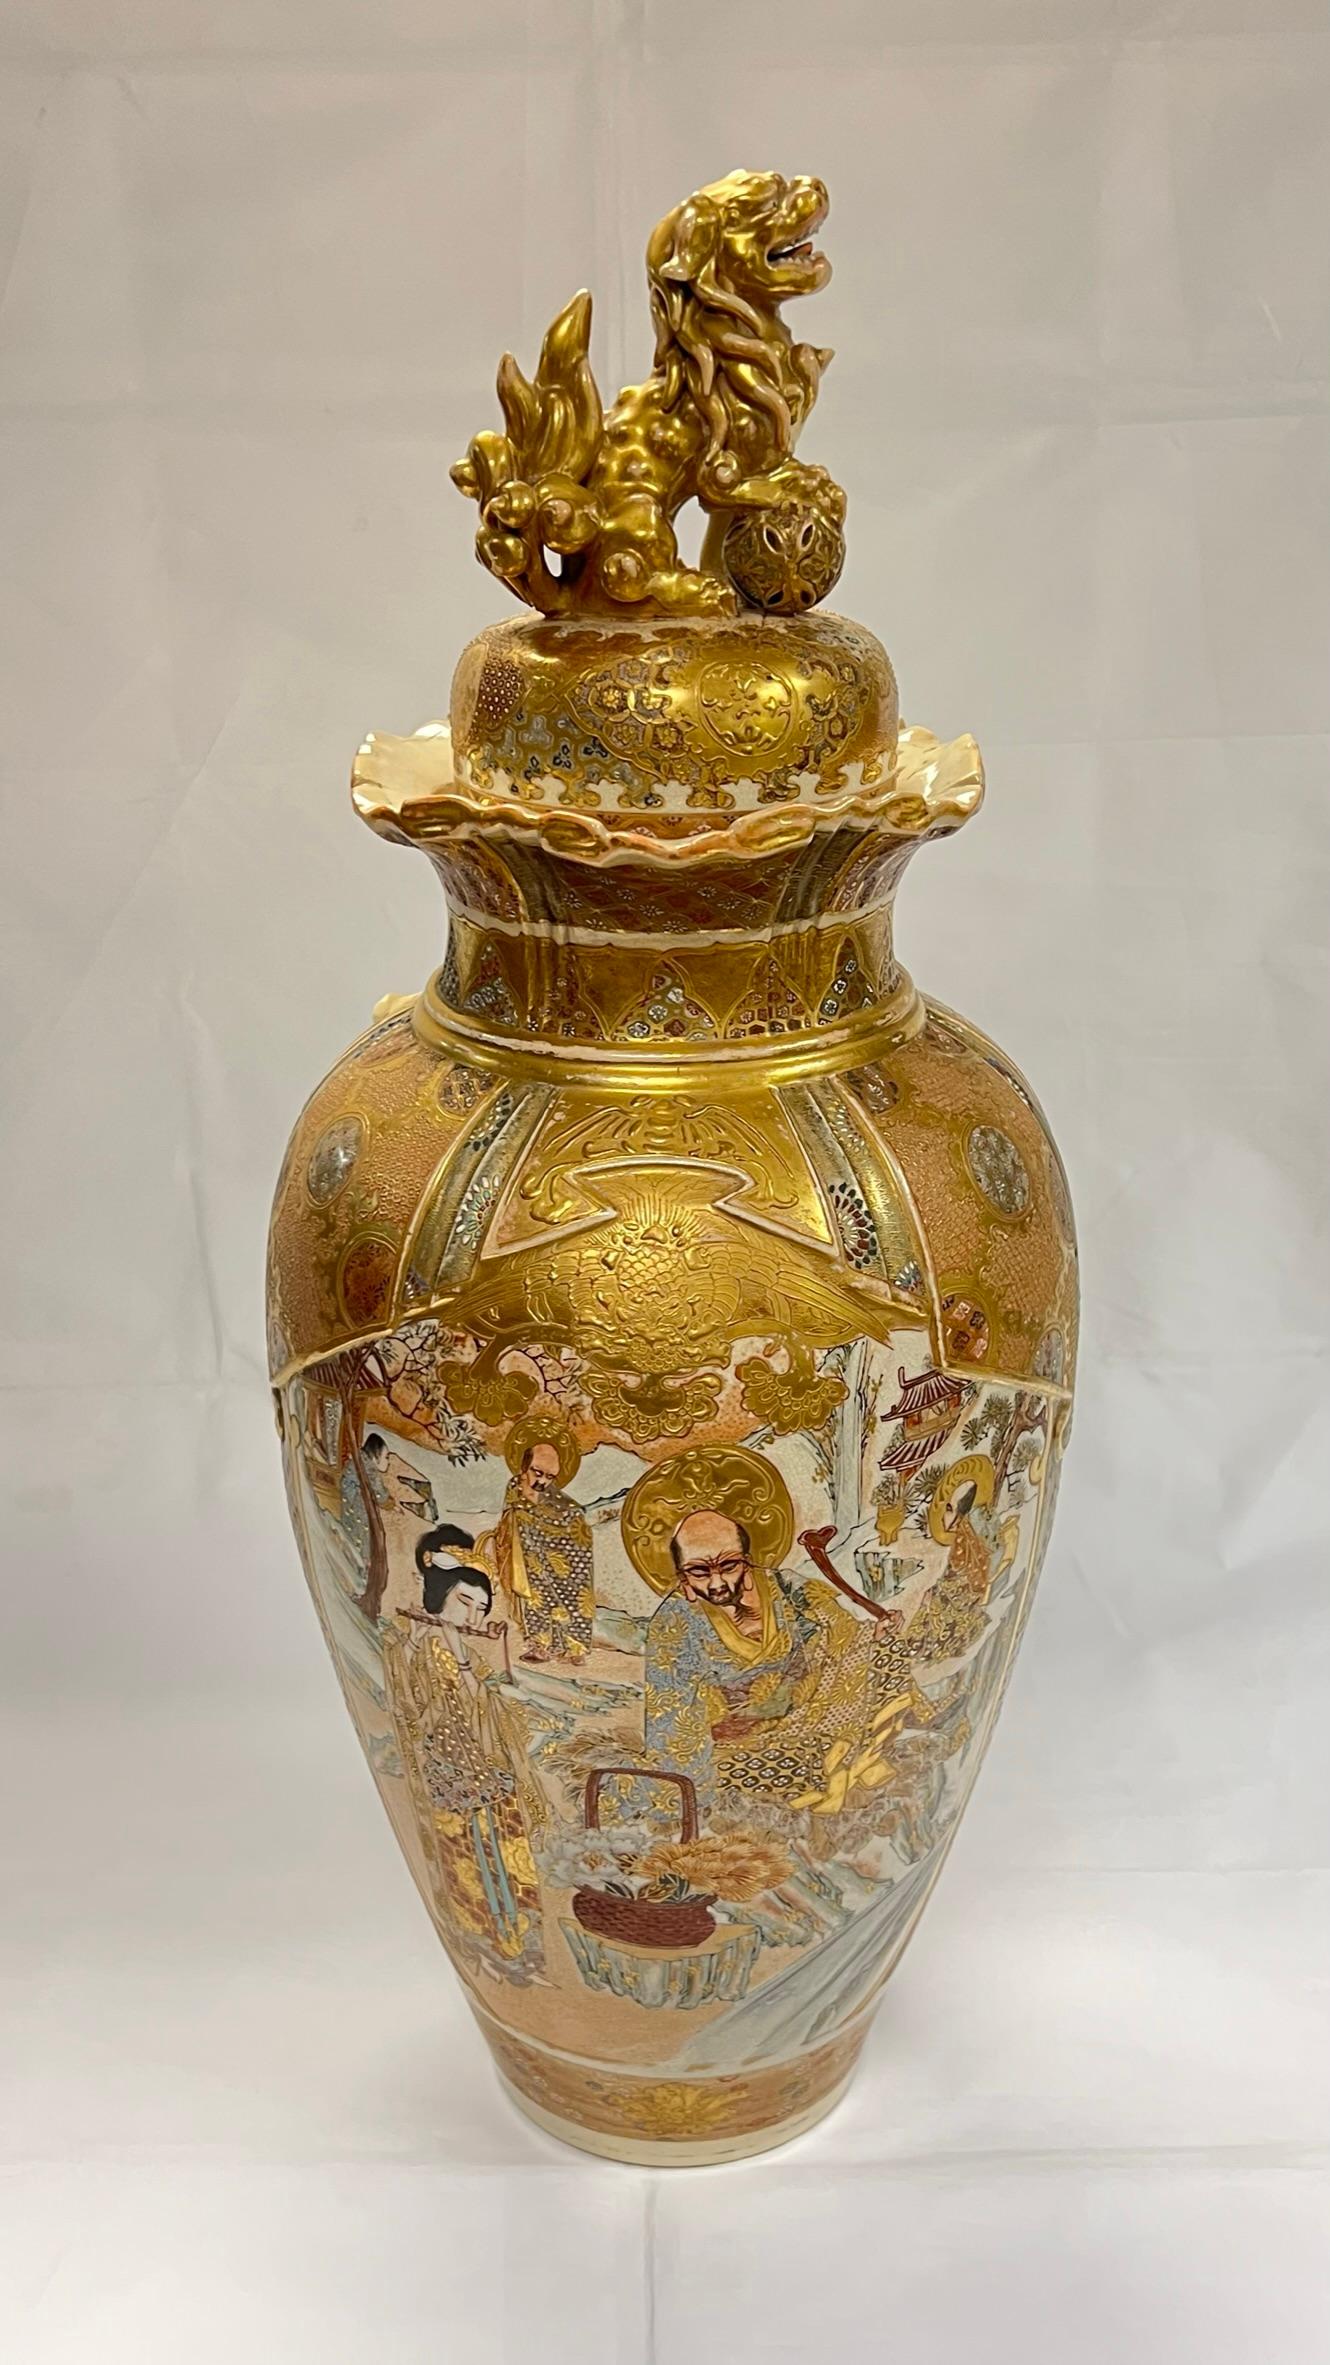 Exceptionnel et grand vase de Satsuma avec couvercle à fleuron en chien de fusil, finement émaillé et doré.  Perçage apparent pour utilisation antérieure comme lampe de table.  Fente de cuisson sur le couvercle, sinon en excellent état.